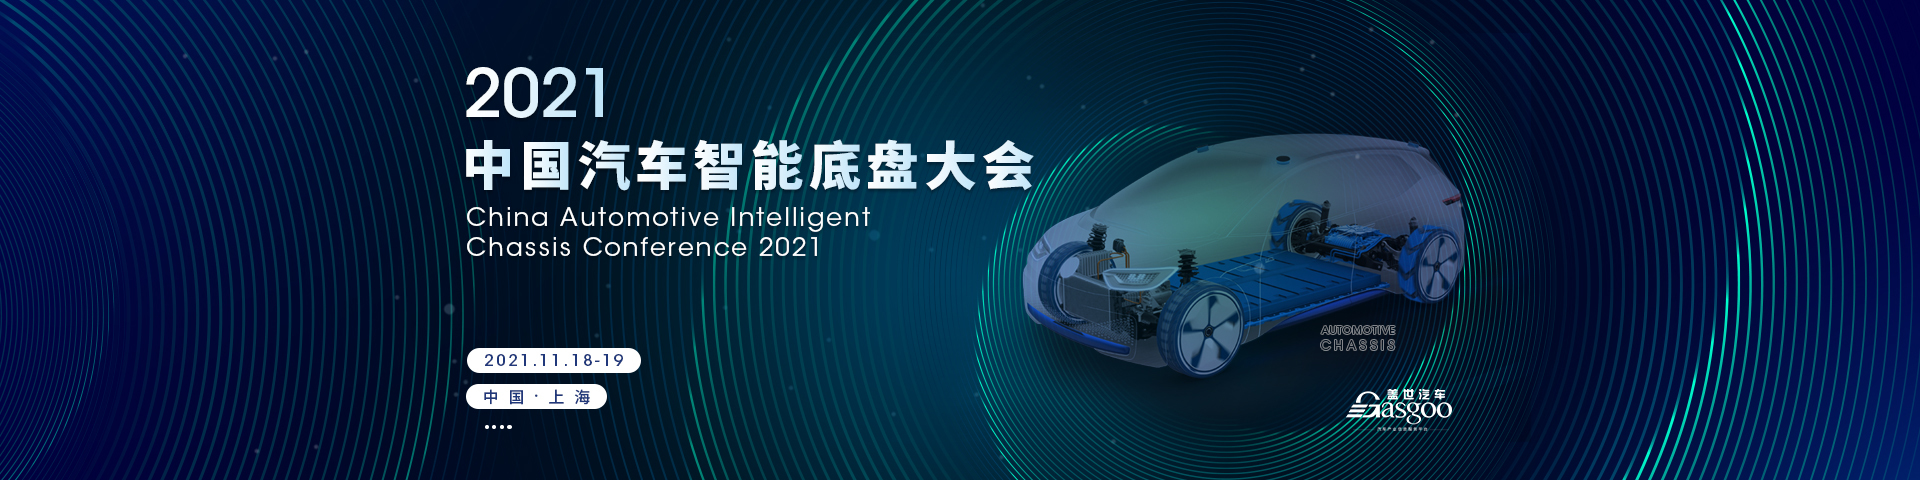 盖世汽车2021中国汽车智能底盘大会